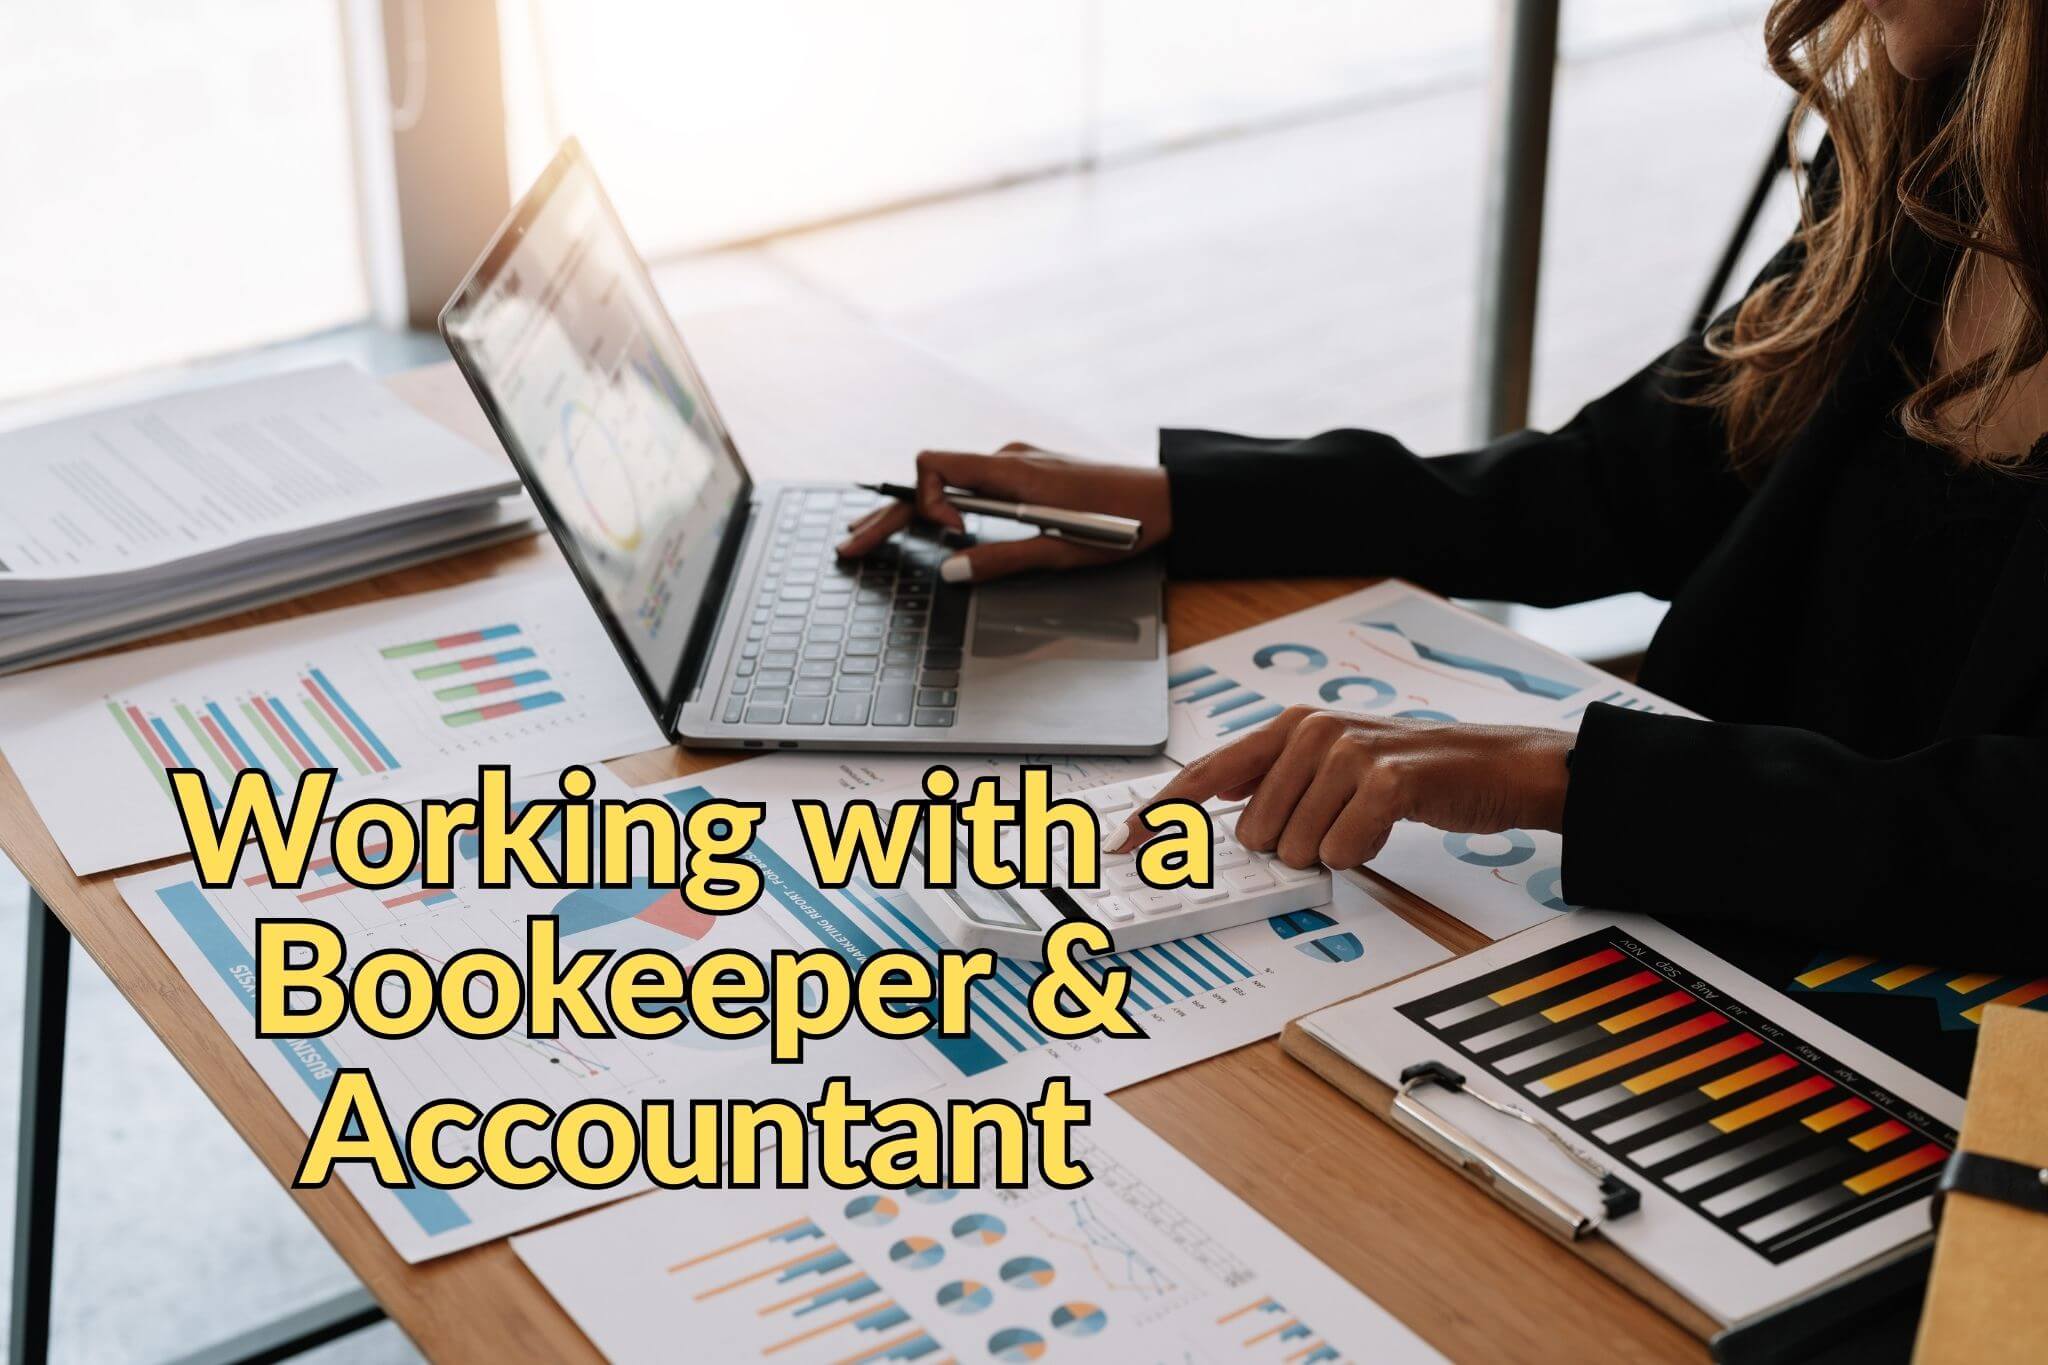 Book keeper & Accountant eCommerce Accountant